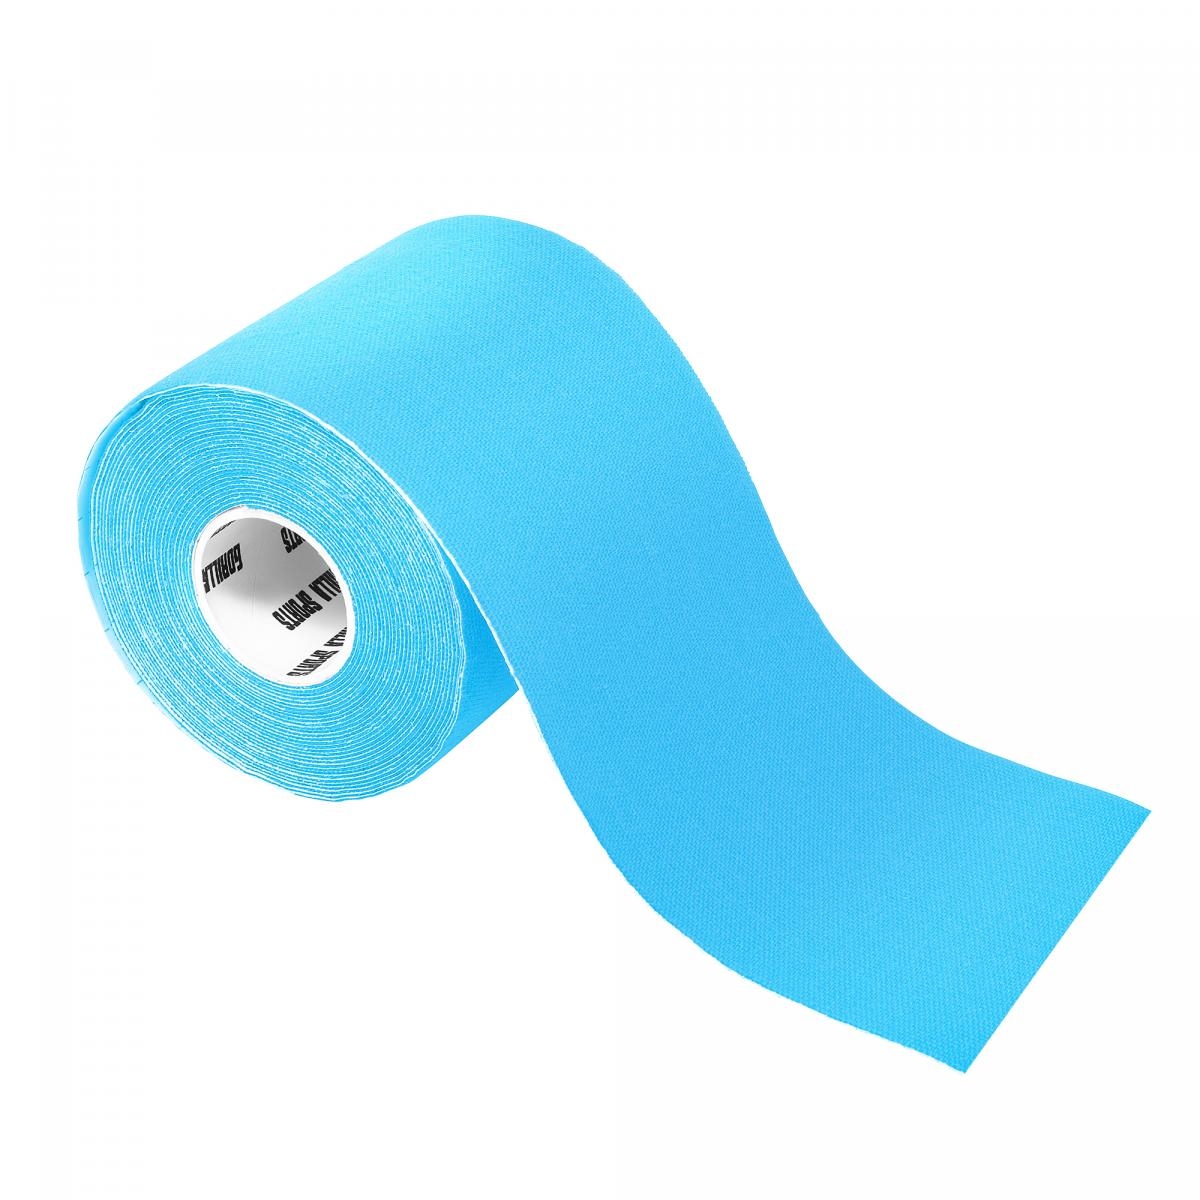 Bande de kinÃ©siologie bleue claire - rouleau de 5 m - Largeur : 7,5 cm